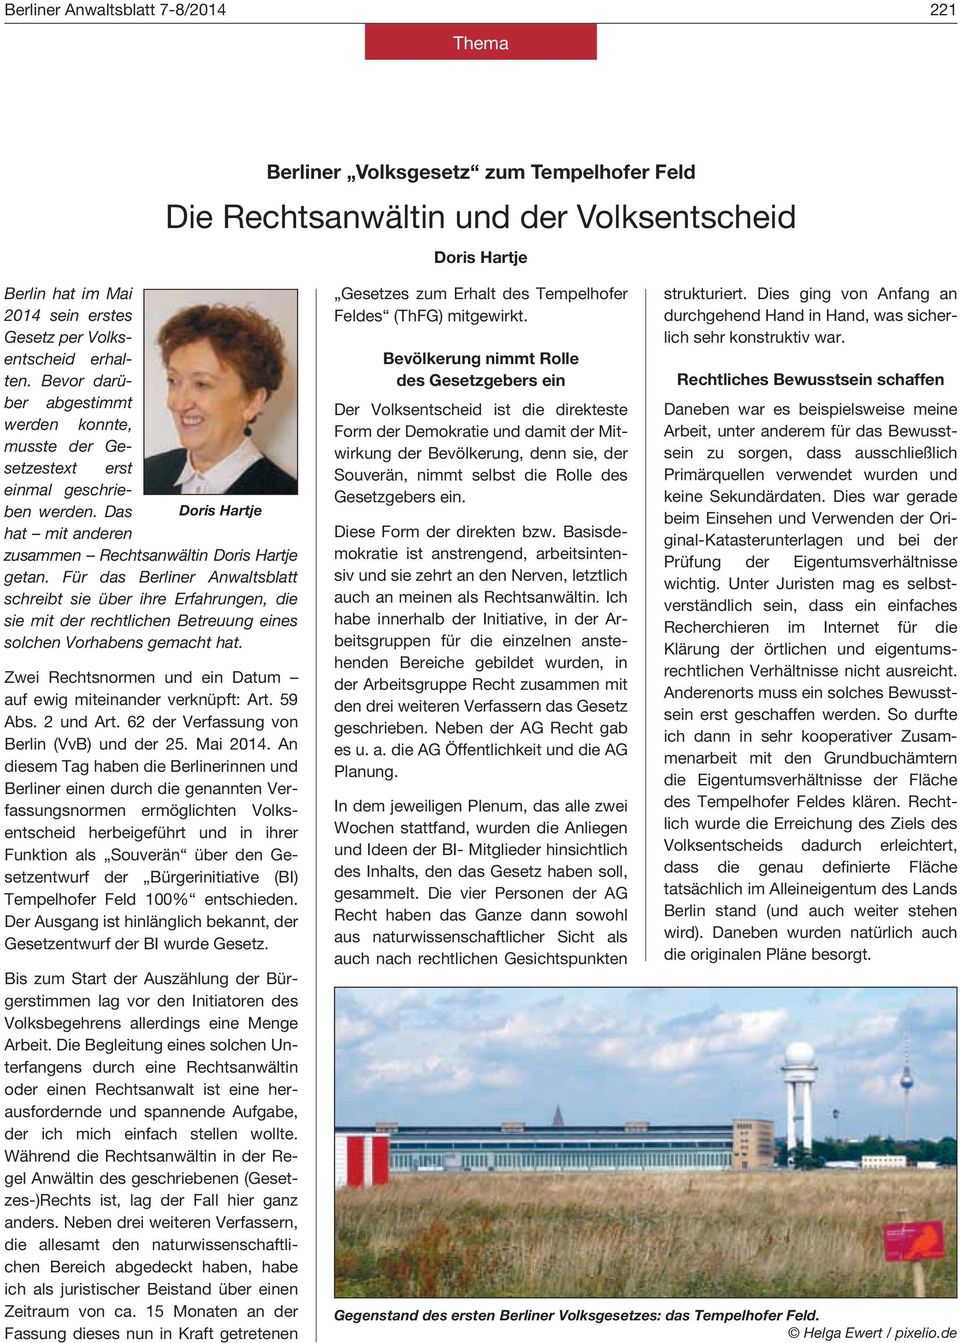 Für das Berliner Anwaltsblatt schreibt sie über ihre Erfahrungen, die sie mit der rechtlichen Betreuung eines solchen Vorhabens gemacht hat.